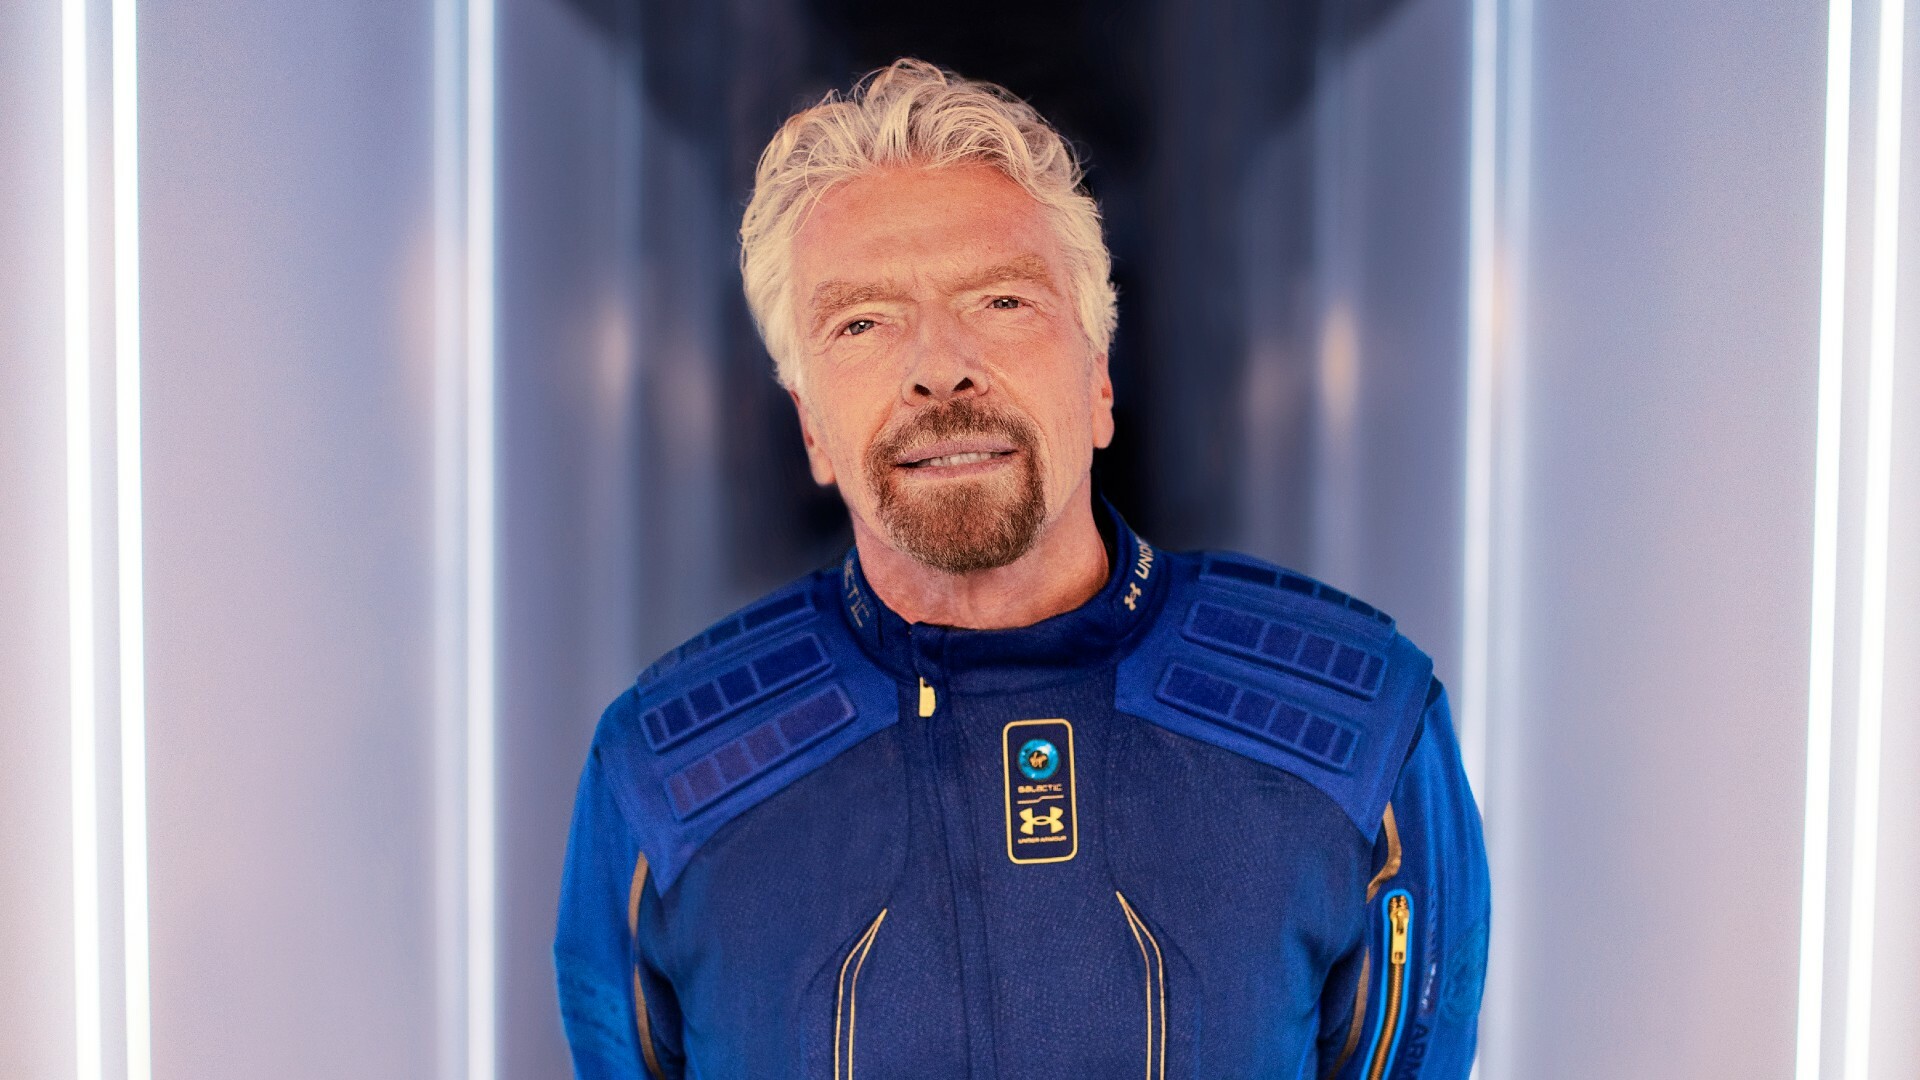 Richard Branson volerà nello spazio nove giorni prima di Jeff Bezos